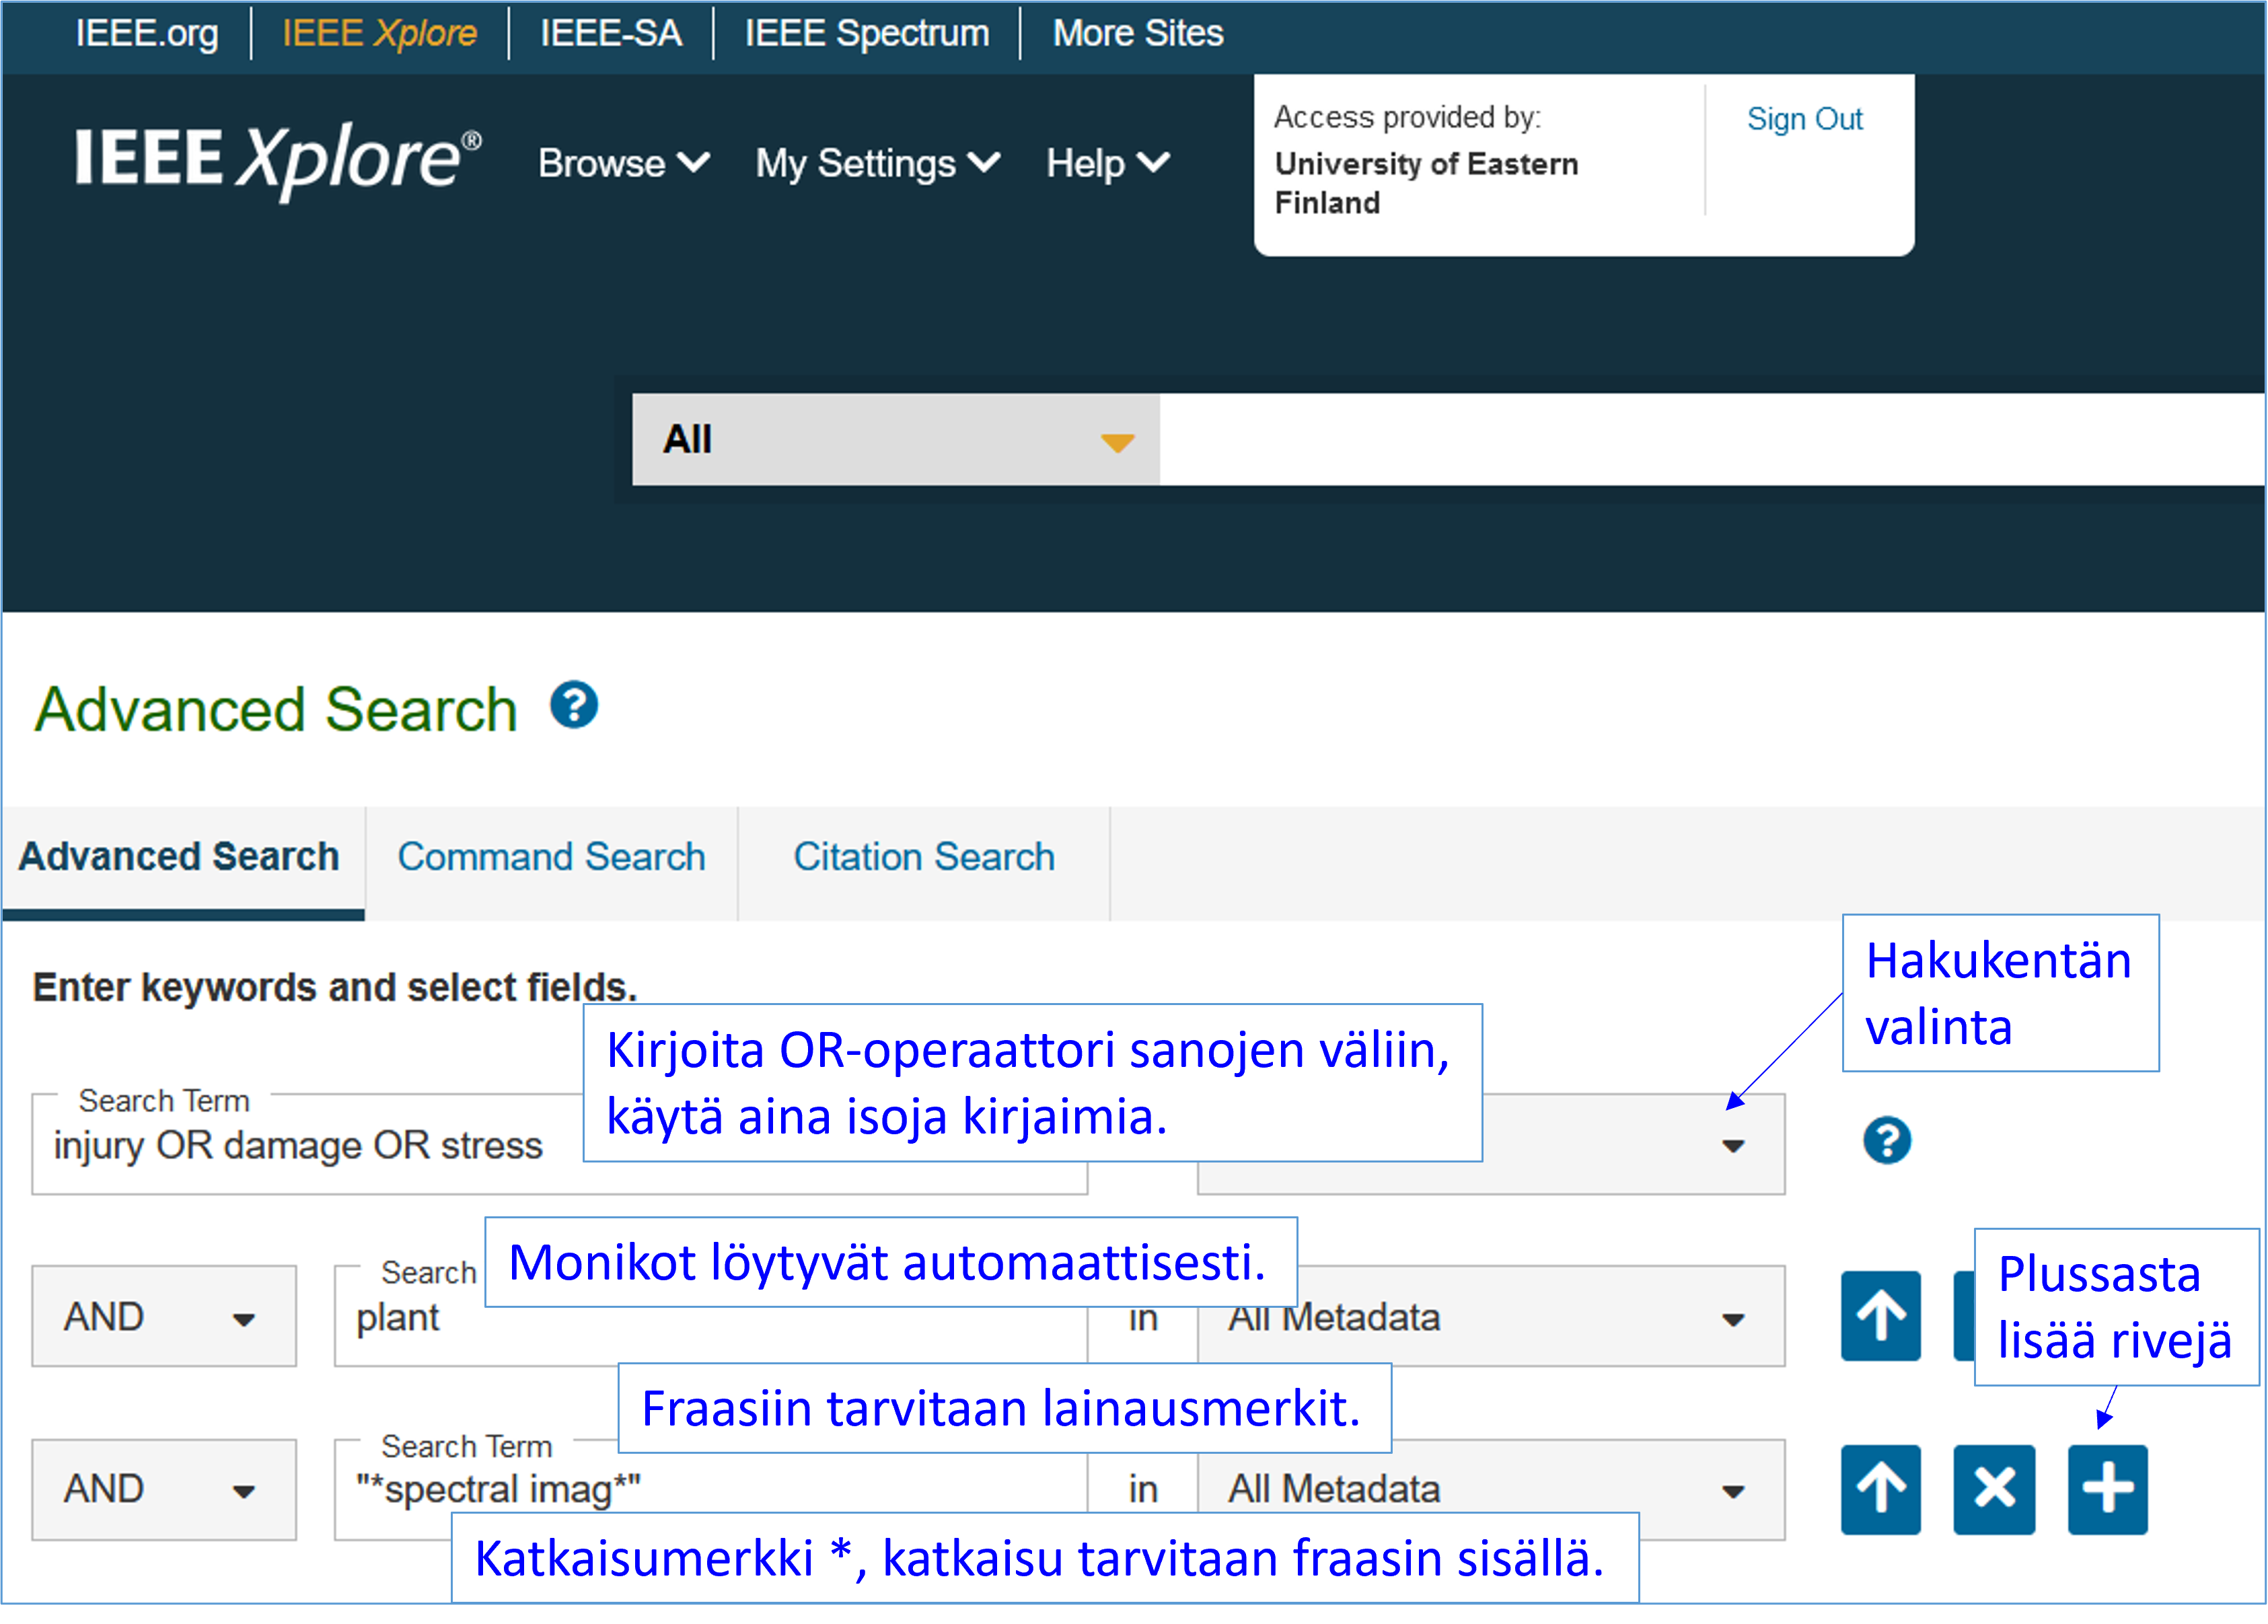 Kuvakaappaus. IEEE Xplore -palvelun sivu Advanced Search. Ohje: Kirjoita operaattori suurin kirjaimin. Fraasi lainausmerkkeihin, katkaisu on *; tarvitaan myös fraasin sisällä. Plussasta saa lisää rivejä.